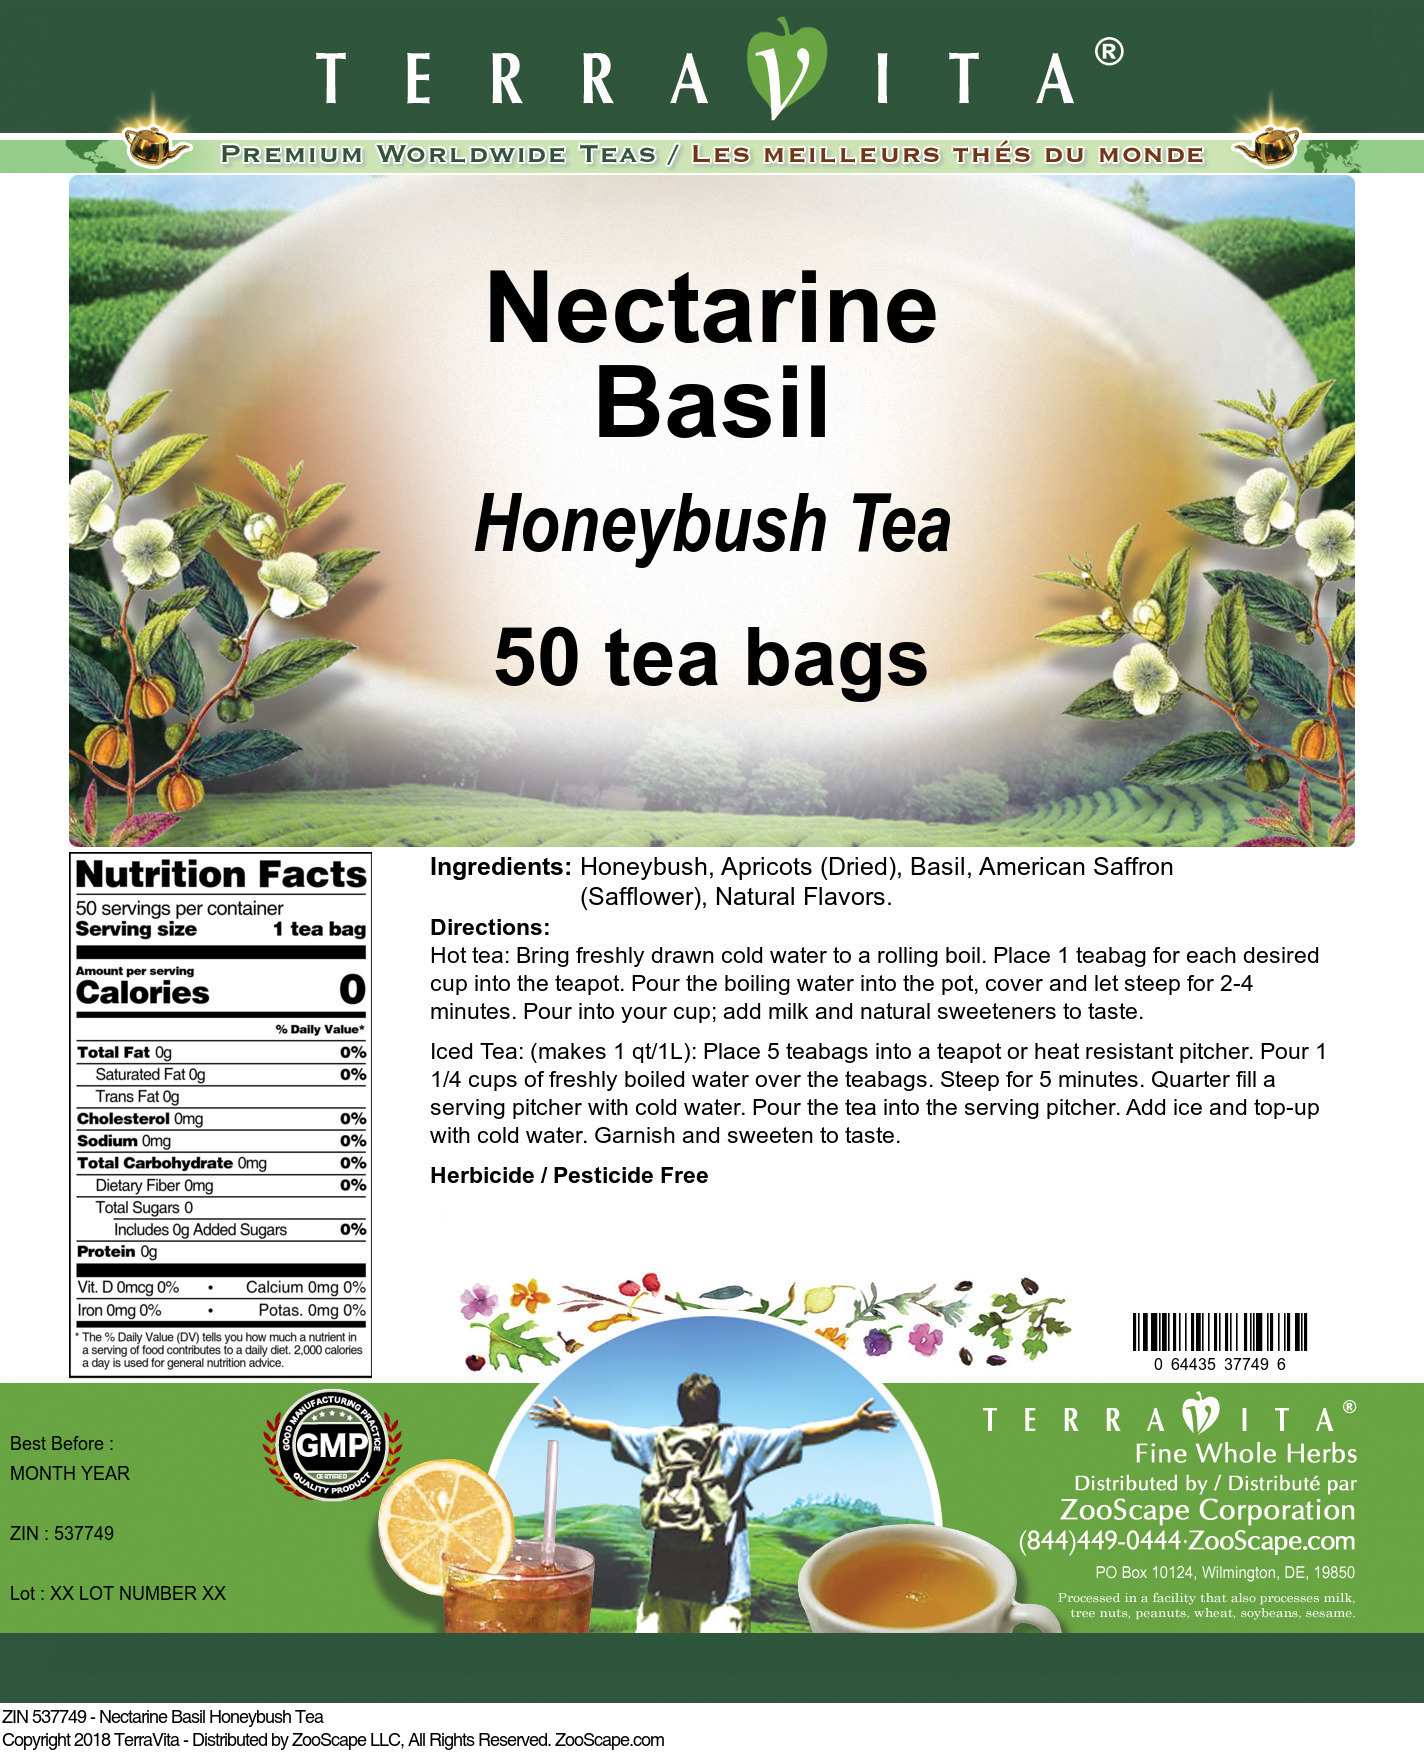 Nectarine Basil Honeybush Tea - Label